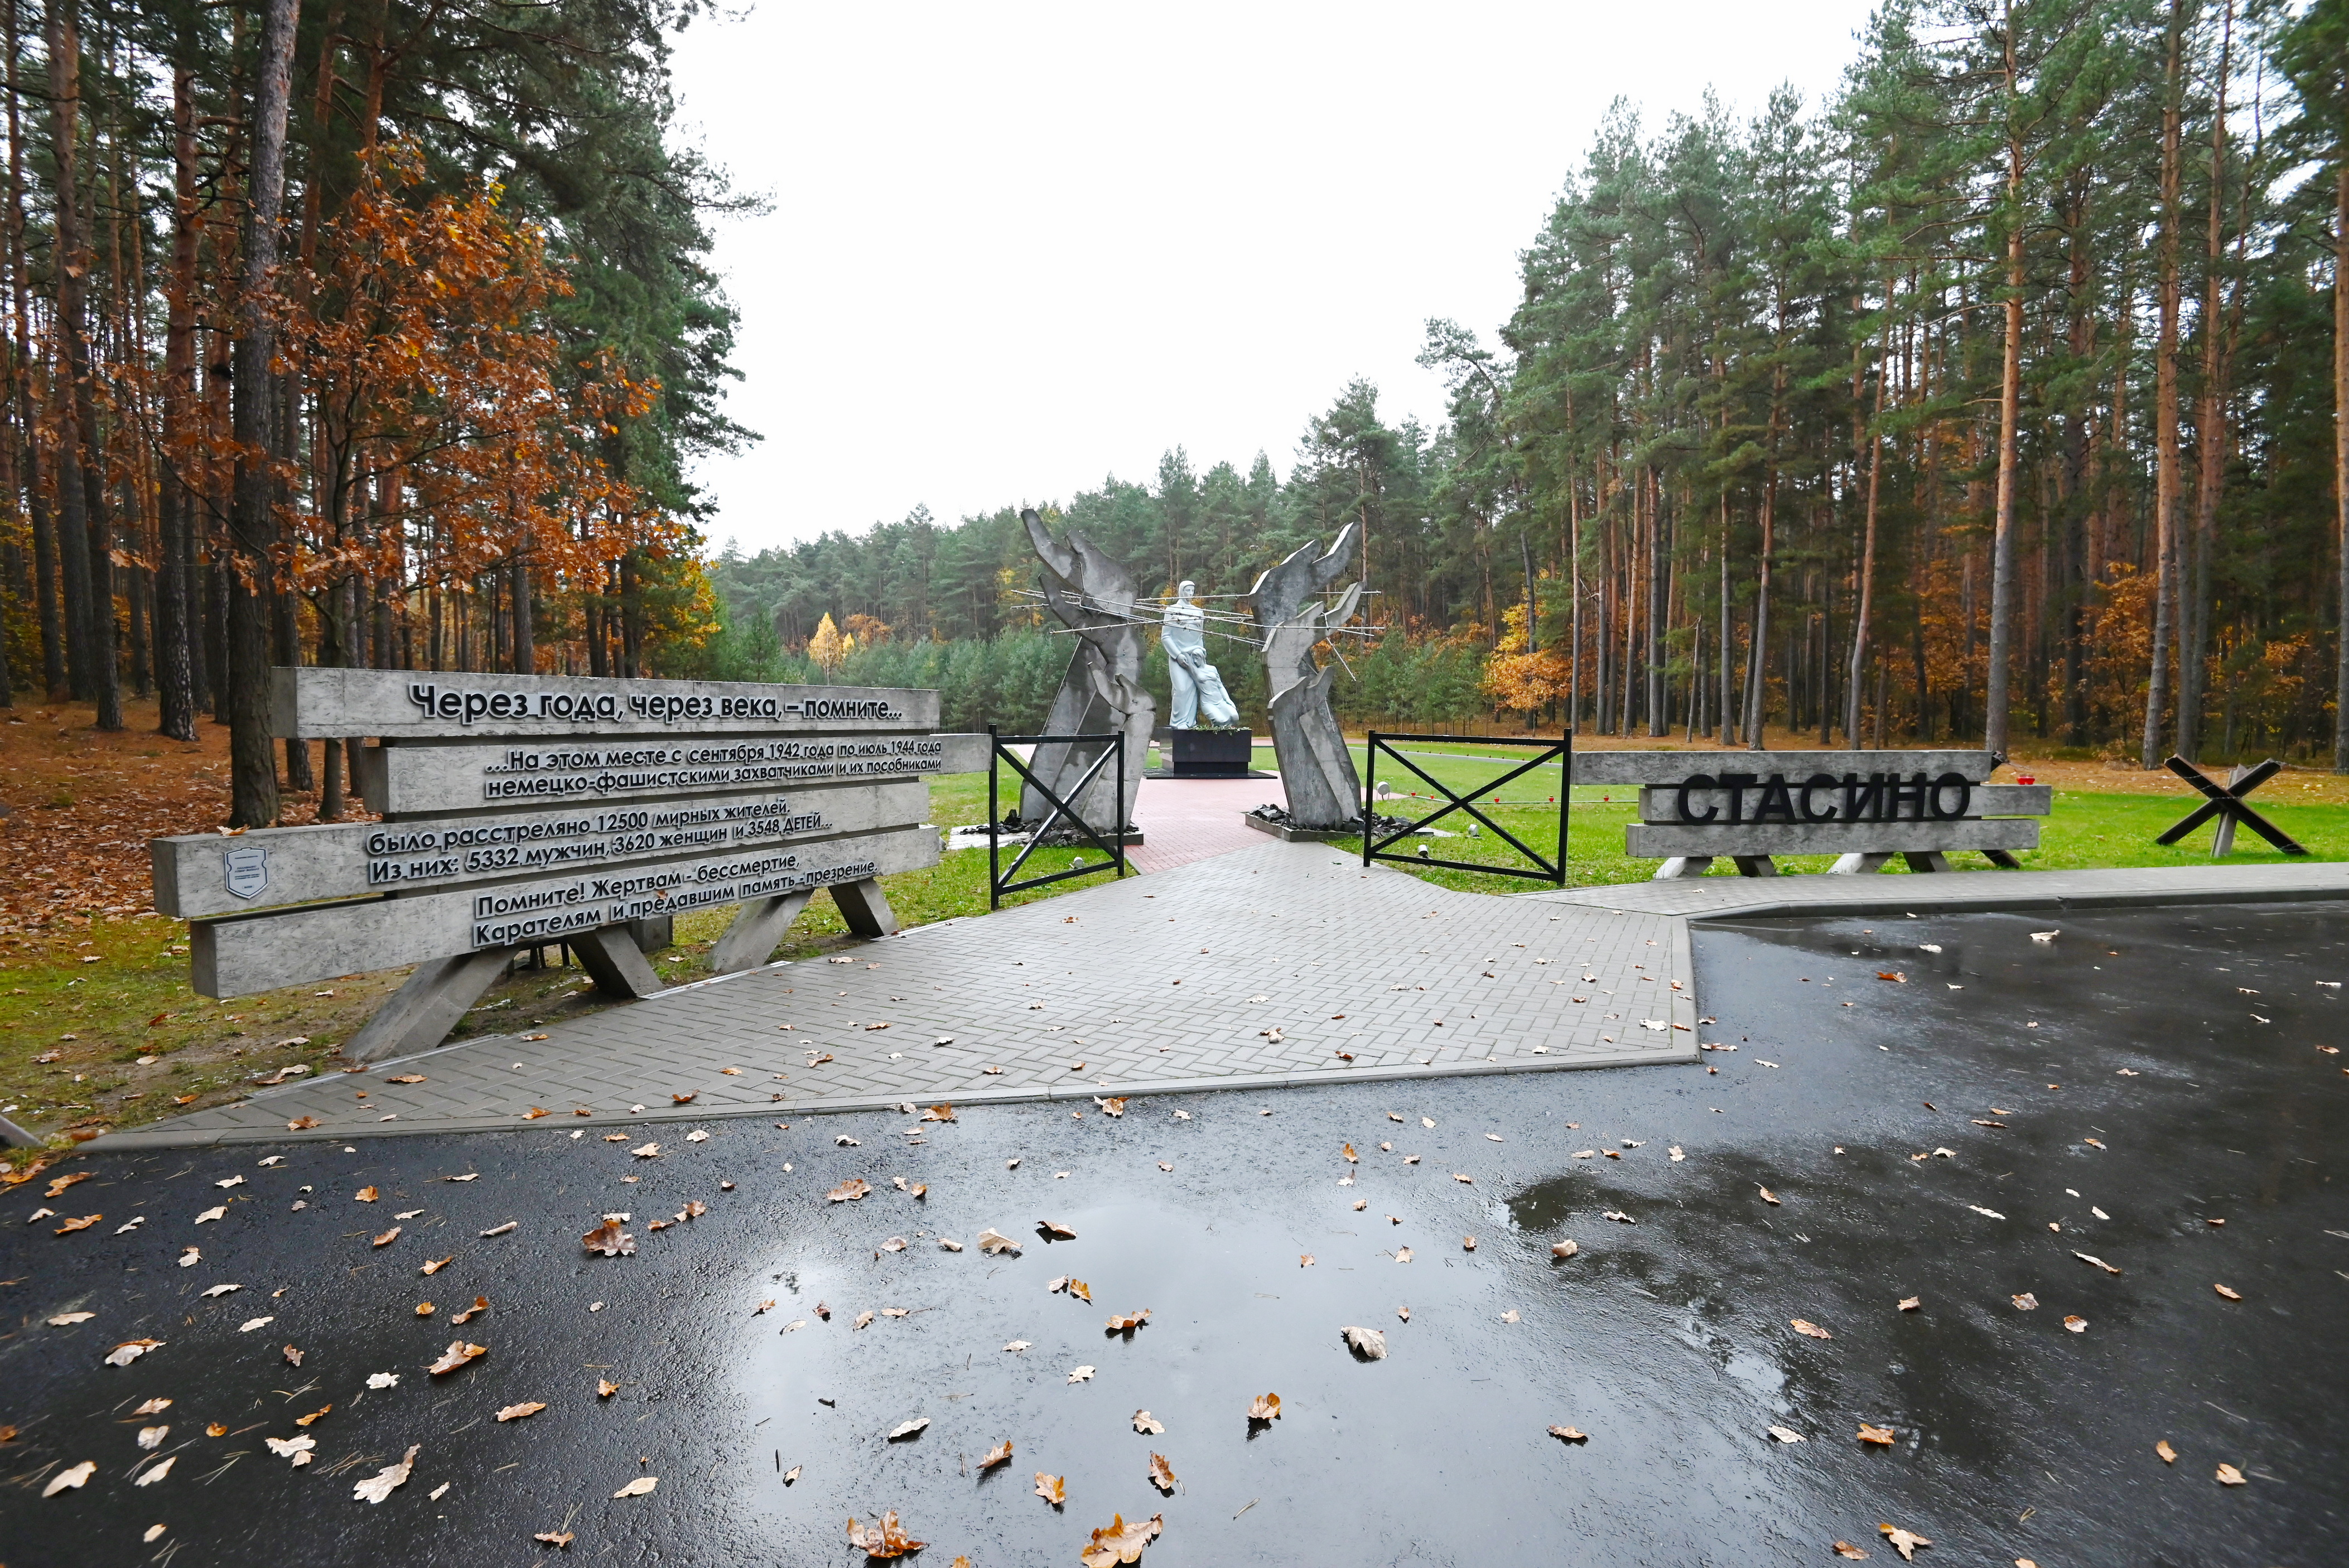 Работники КГК Брестской области посетили мемориал на месте одного из крупнейших захоронений мирных жителей на территории Беларуси